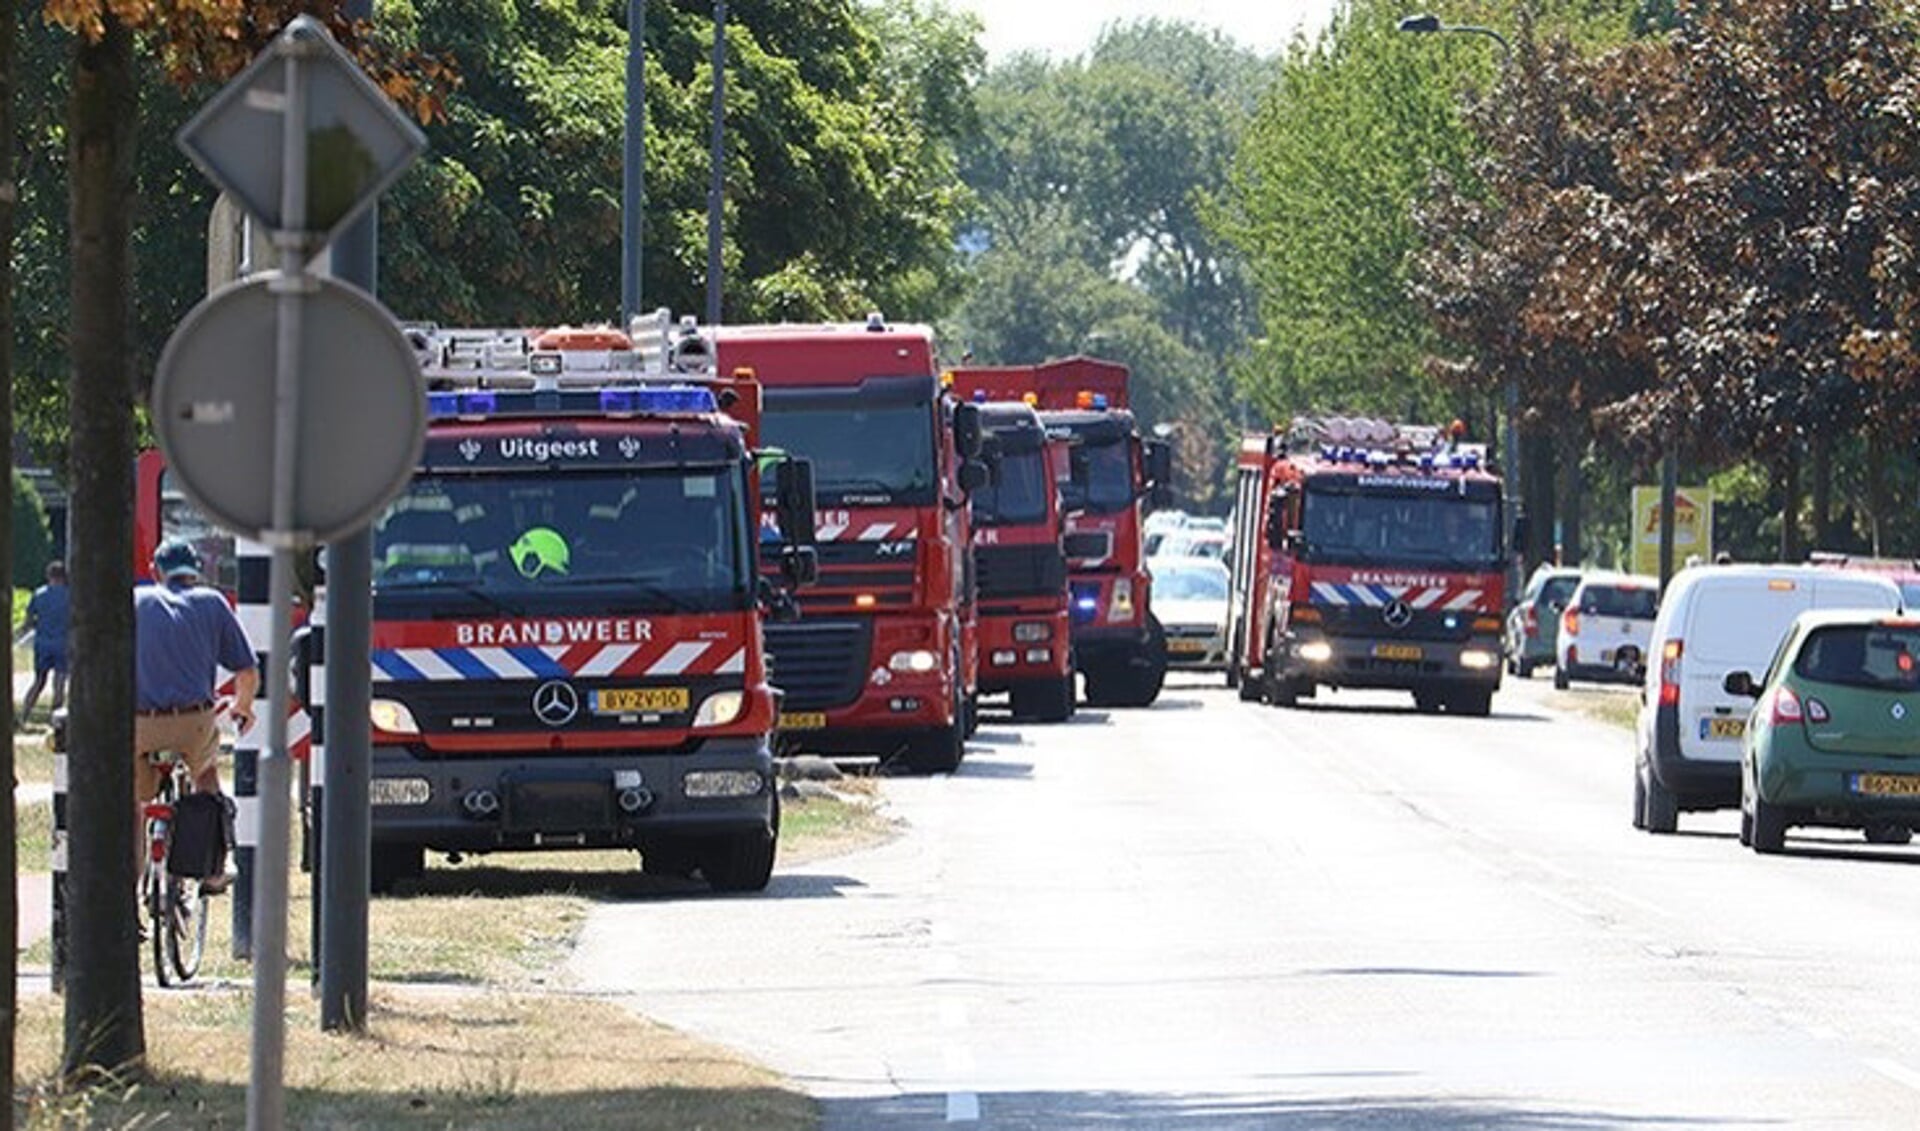 Brandweerauto's trekken richting duingebied van Heemskerk. (foto NH Nieuws-Dennis Mantz)